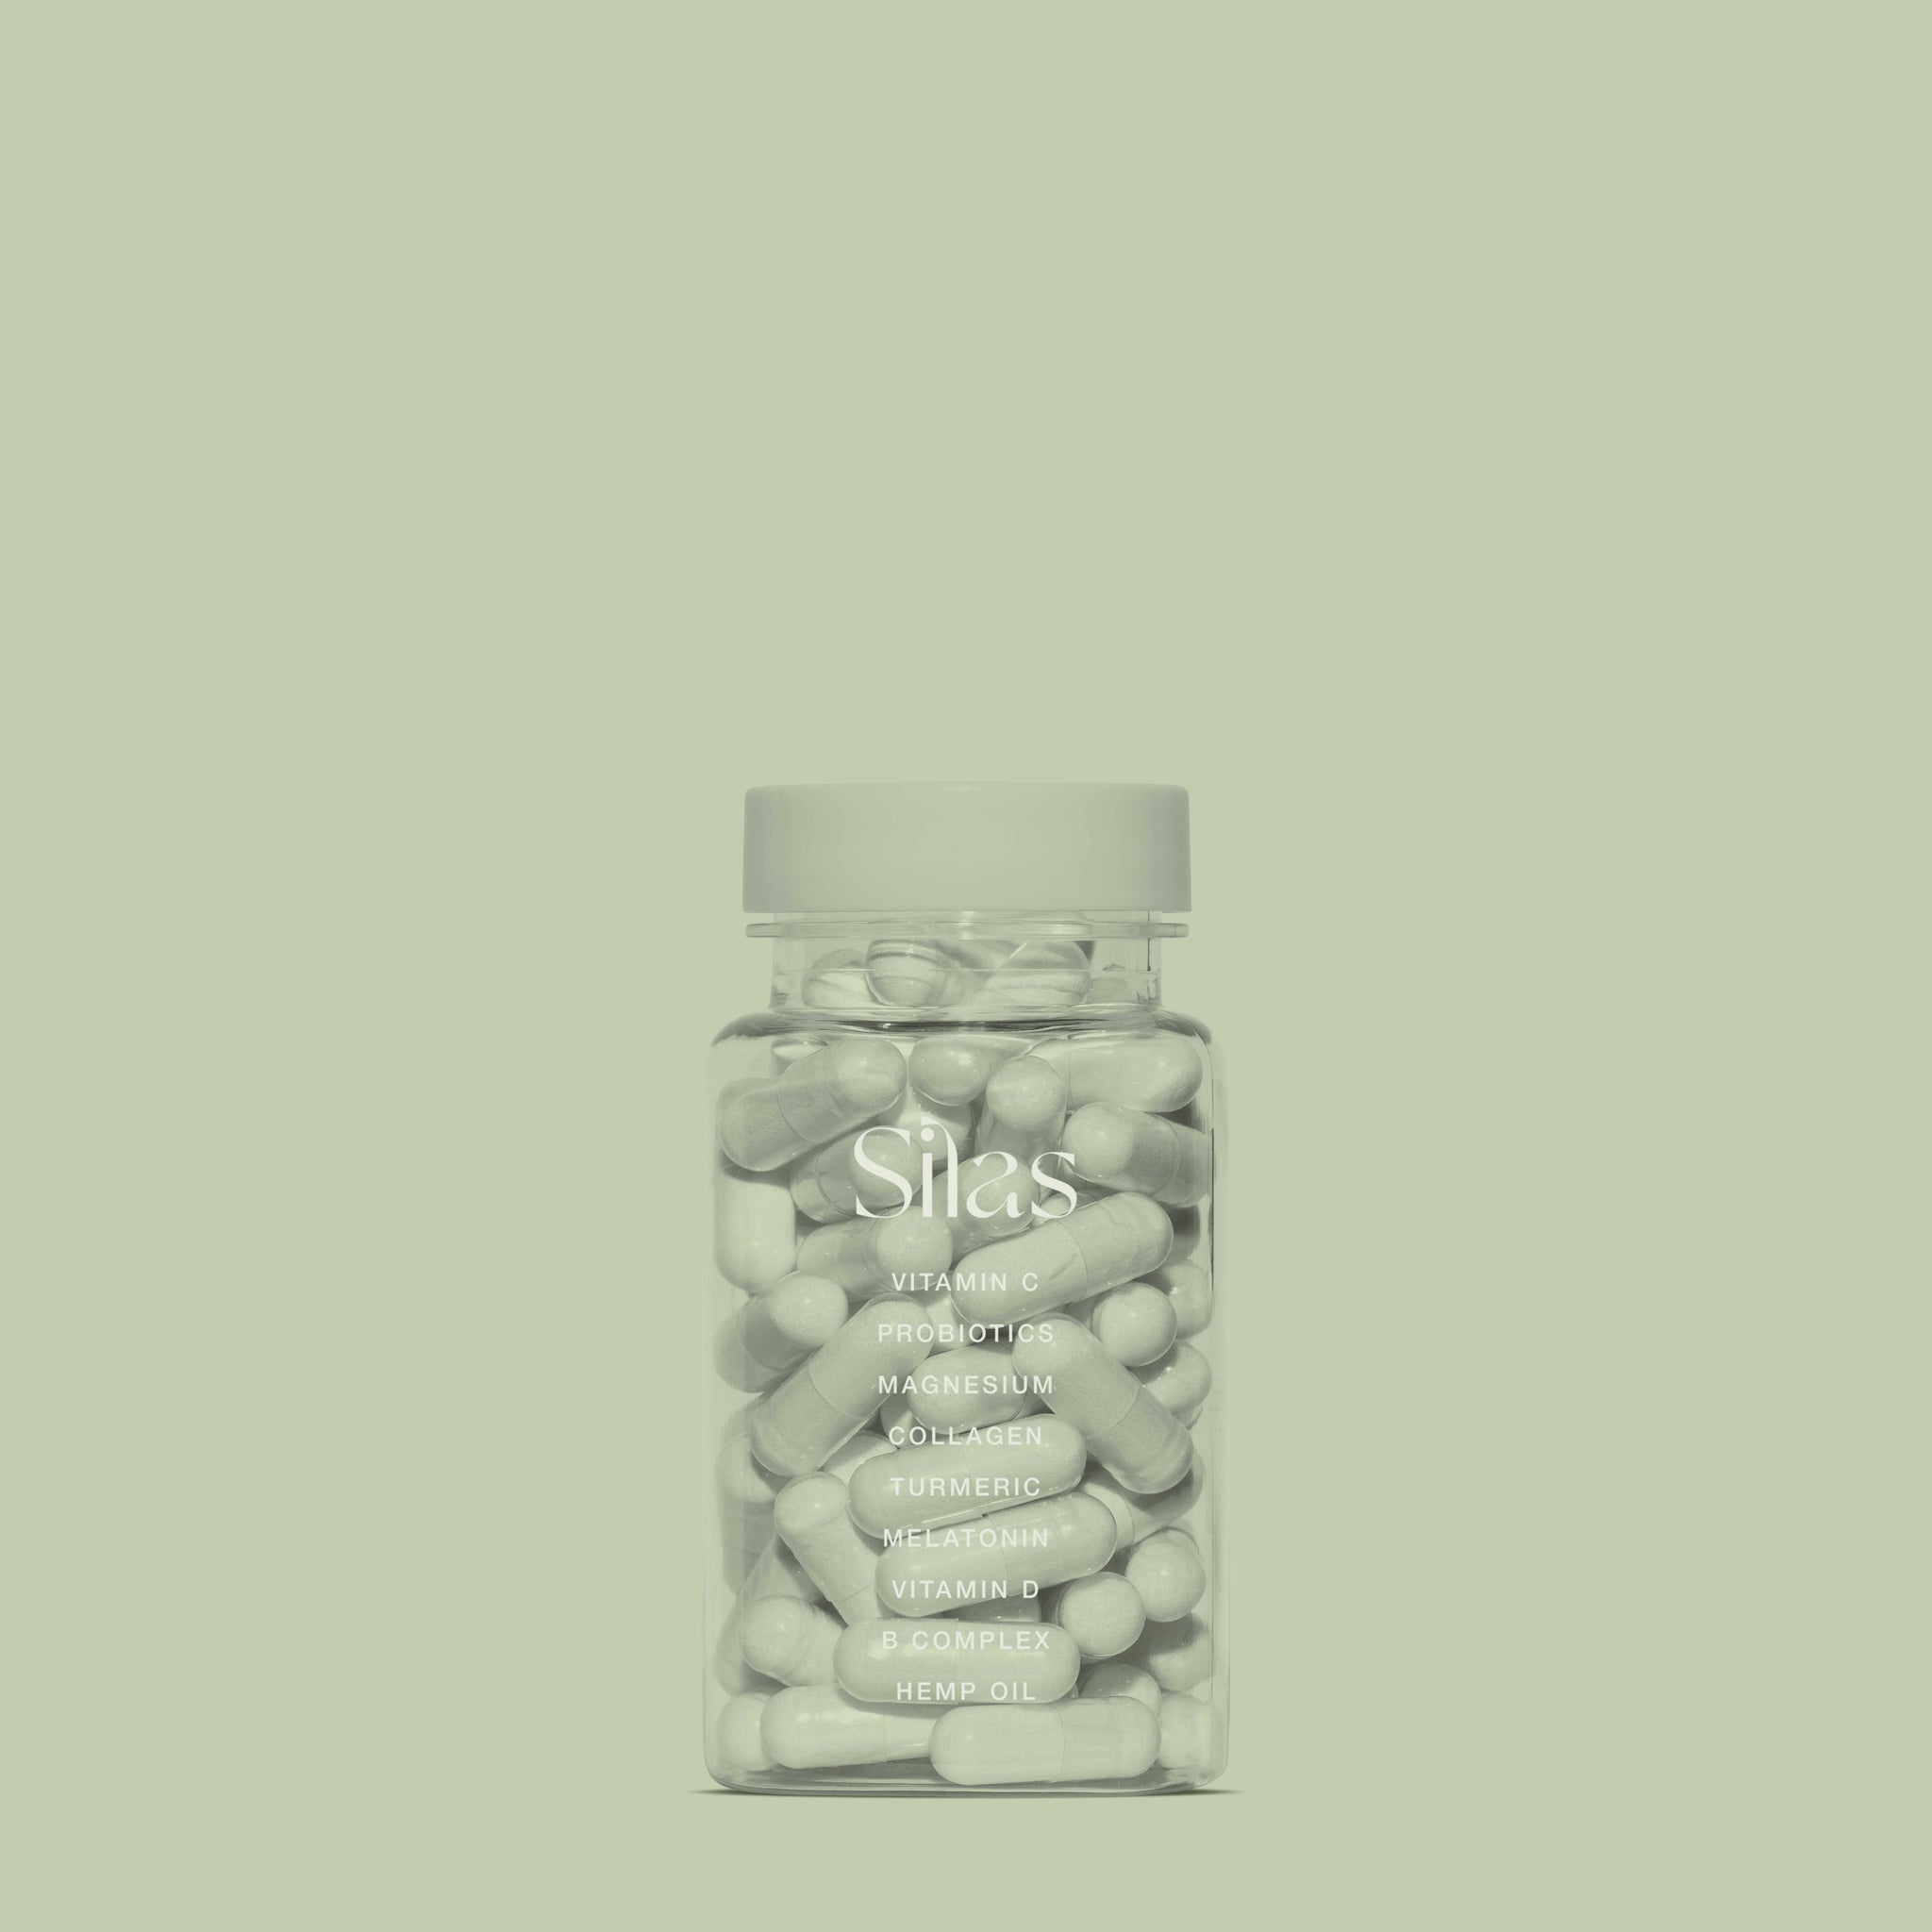 Vitamin Bottle Mockup No. 10 - Copal Studio Packaging Mockups For Designers